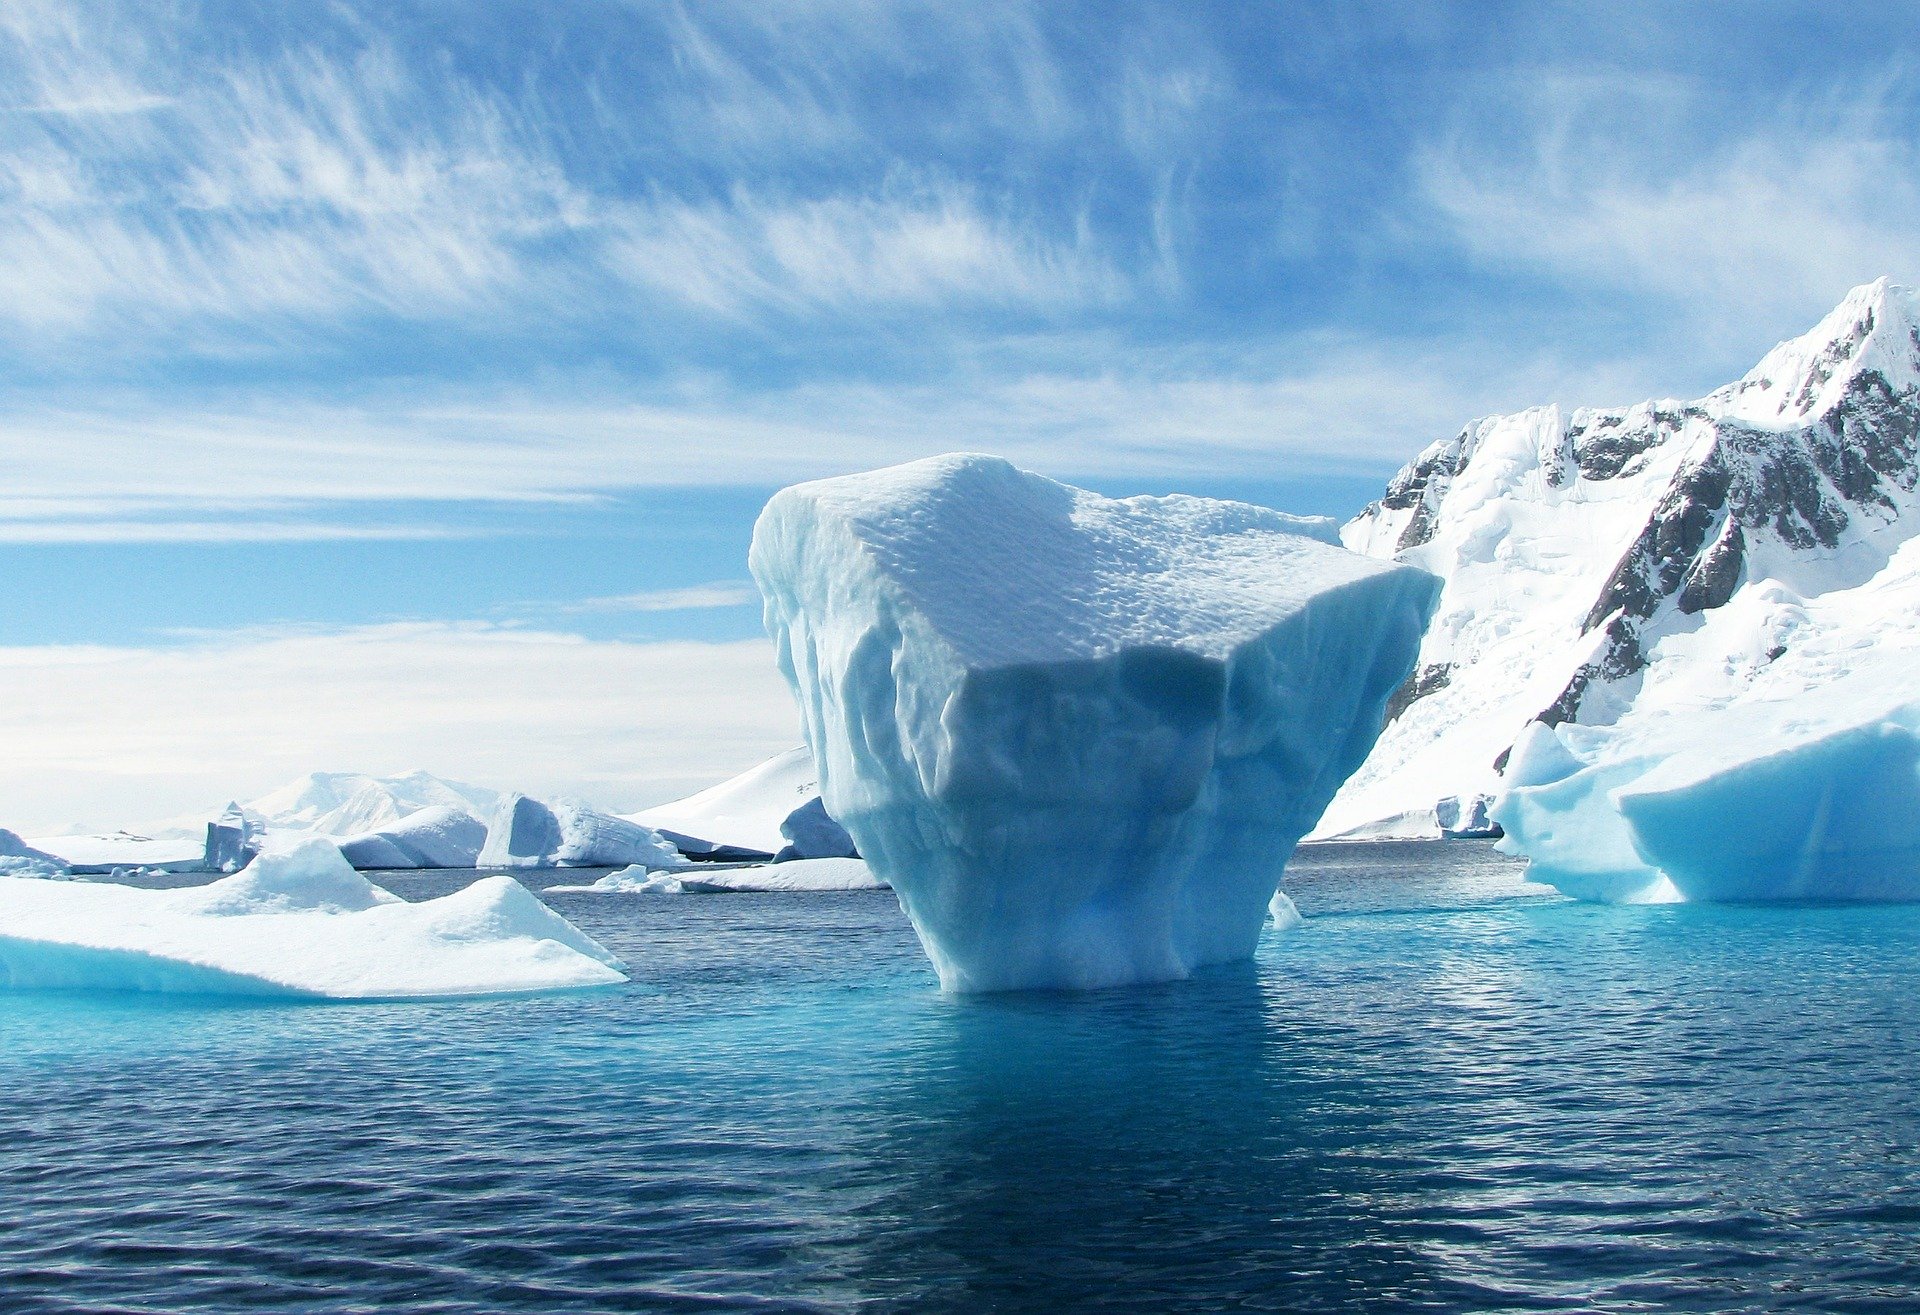 La dernière période interglaciaire suggère une fonte totale de l’arctique d’ici 2035